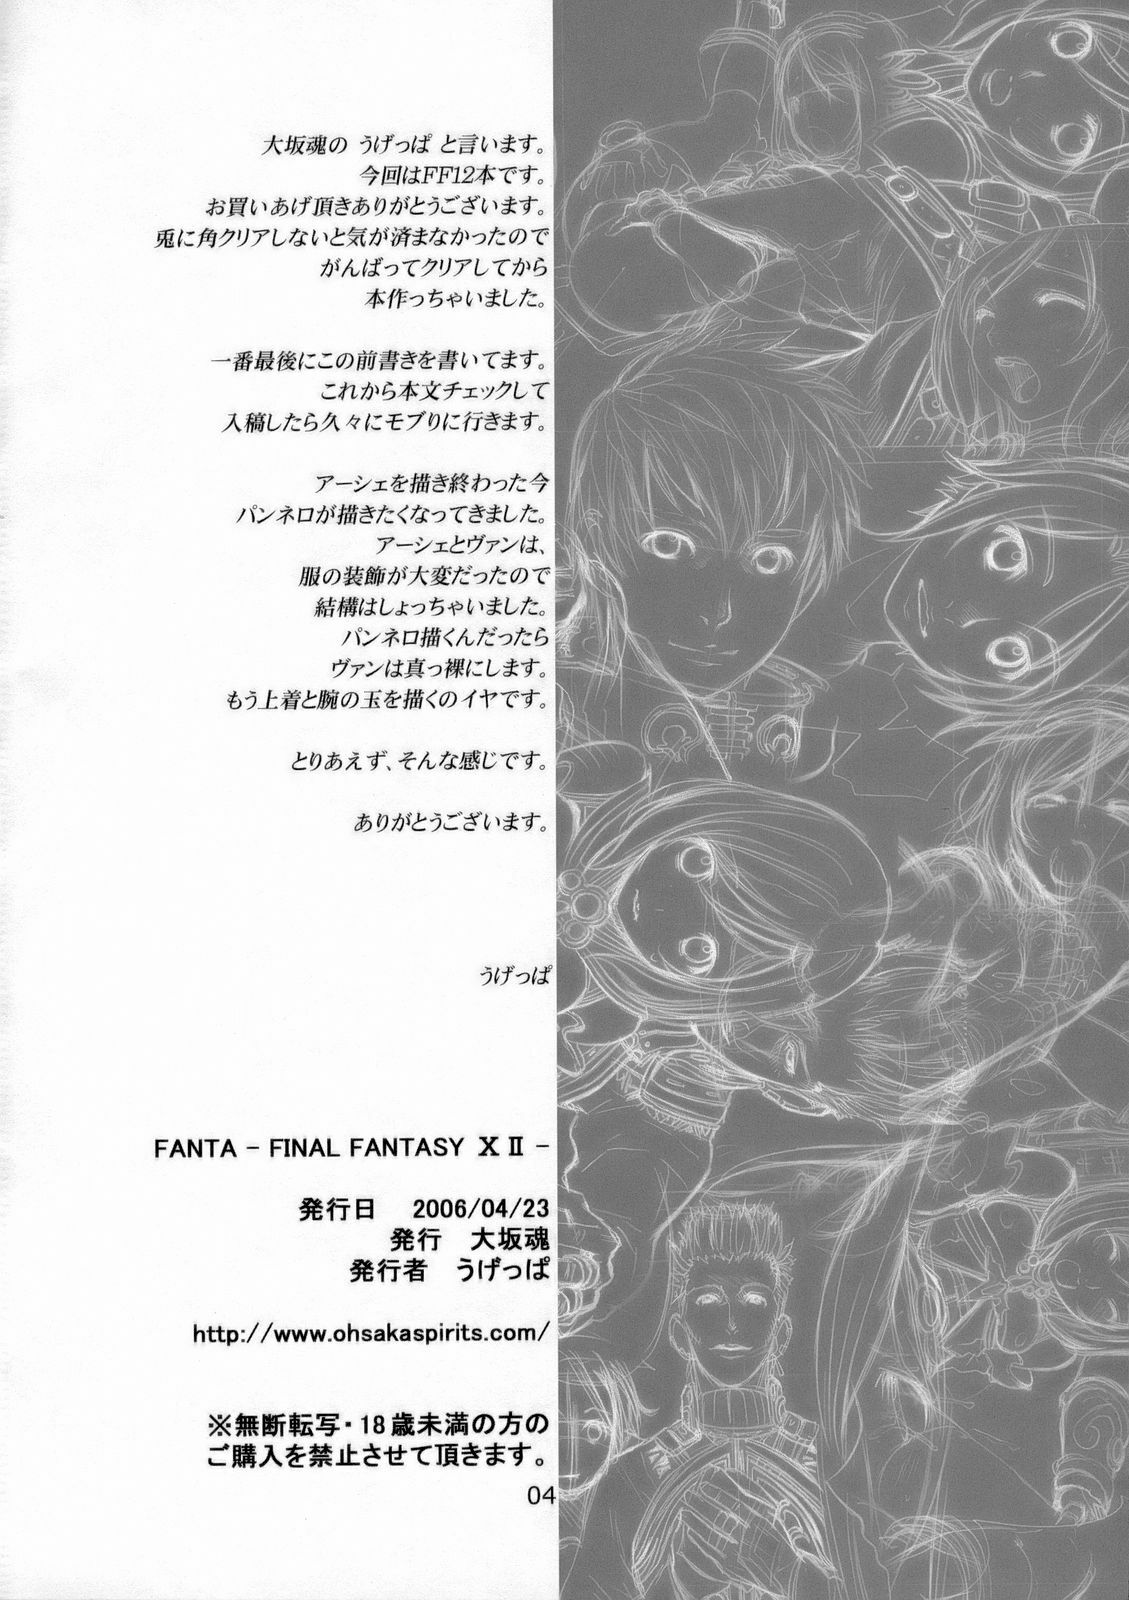 (SC31) [Oh!saka Spirits (Ugeppa)] FANTA (Final FANTAsy XII) page 3 full